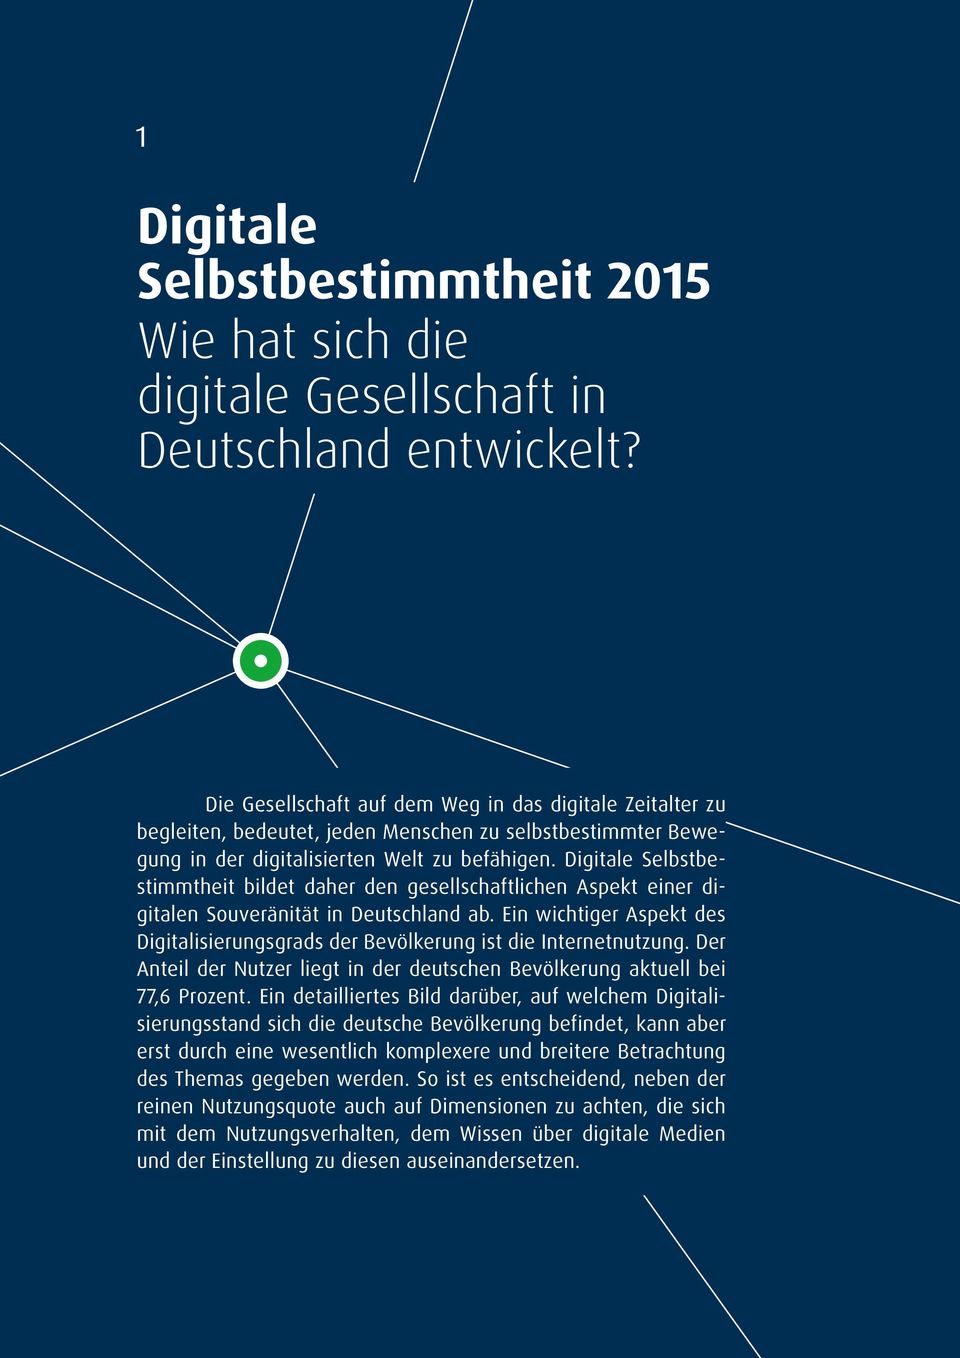 Digitale Selbstbestimmtheit bildet daher den gesellschaftlichen Aspekt einer digitalen Souveränität in Deutschland ab.